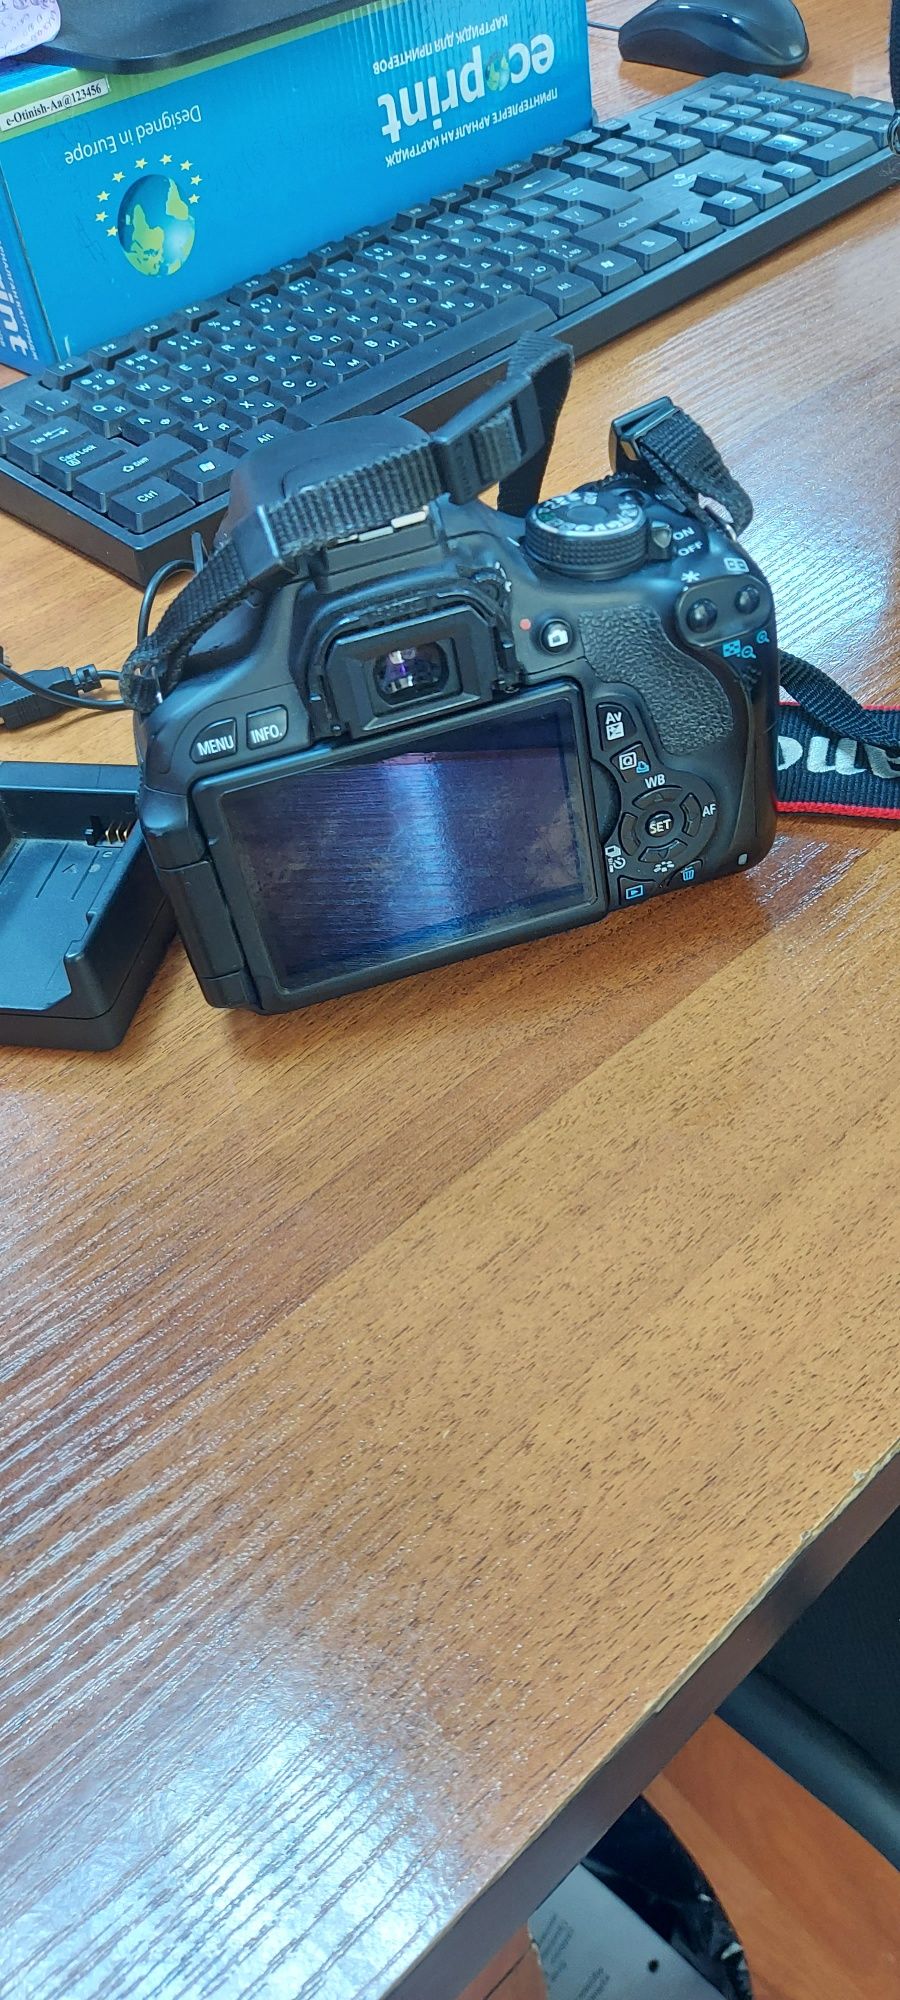 Продам зеркальный фотоаппарат Canon 600 D в отличном состоянии